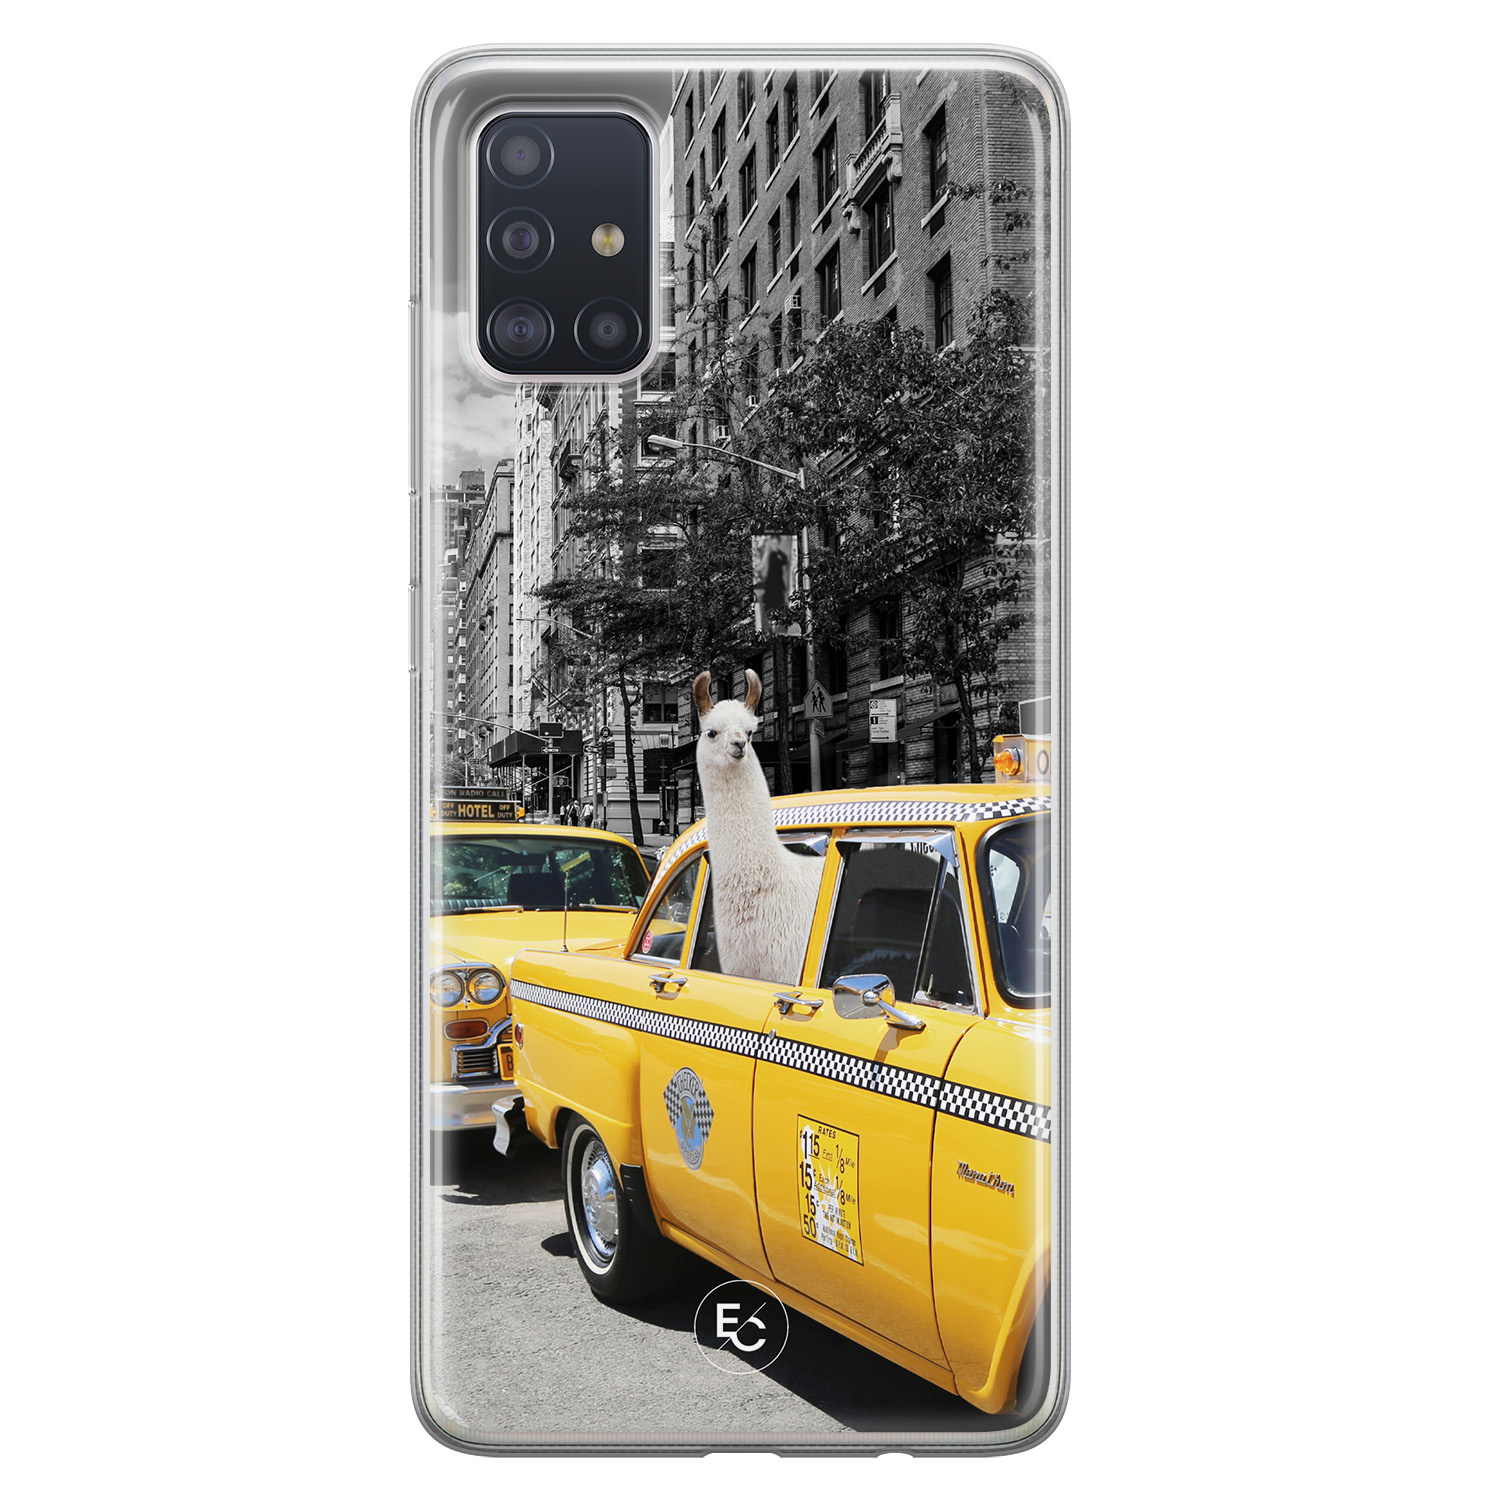 ELLECHIQ Samsung Galaxy A71 siliconen hoesje - Lama in taxi